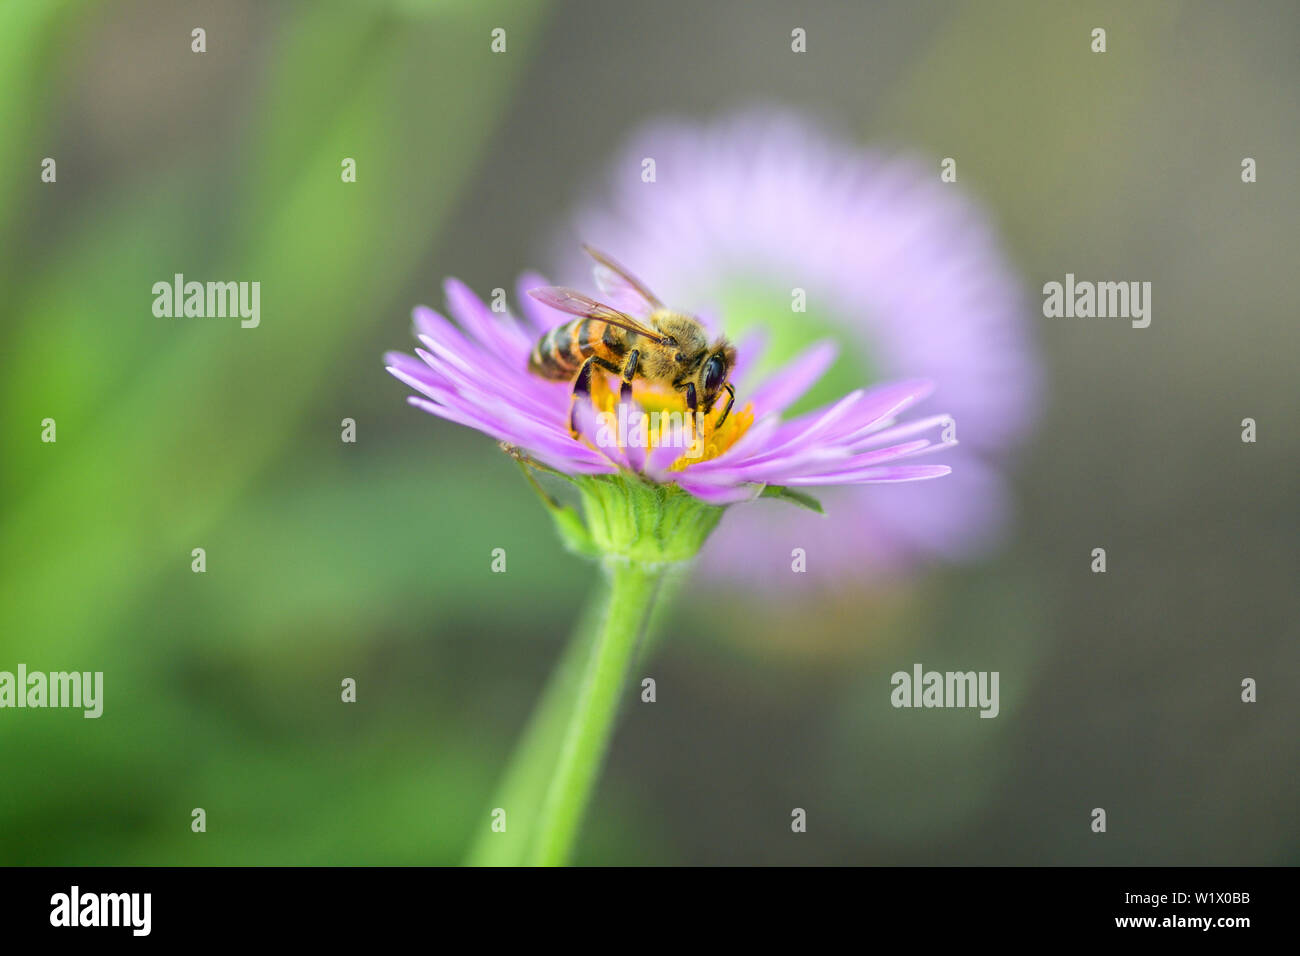 Close-up de una abeja en una flor morada recoge polen y néctar. Fotografía macro horizontal. Foto de stock